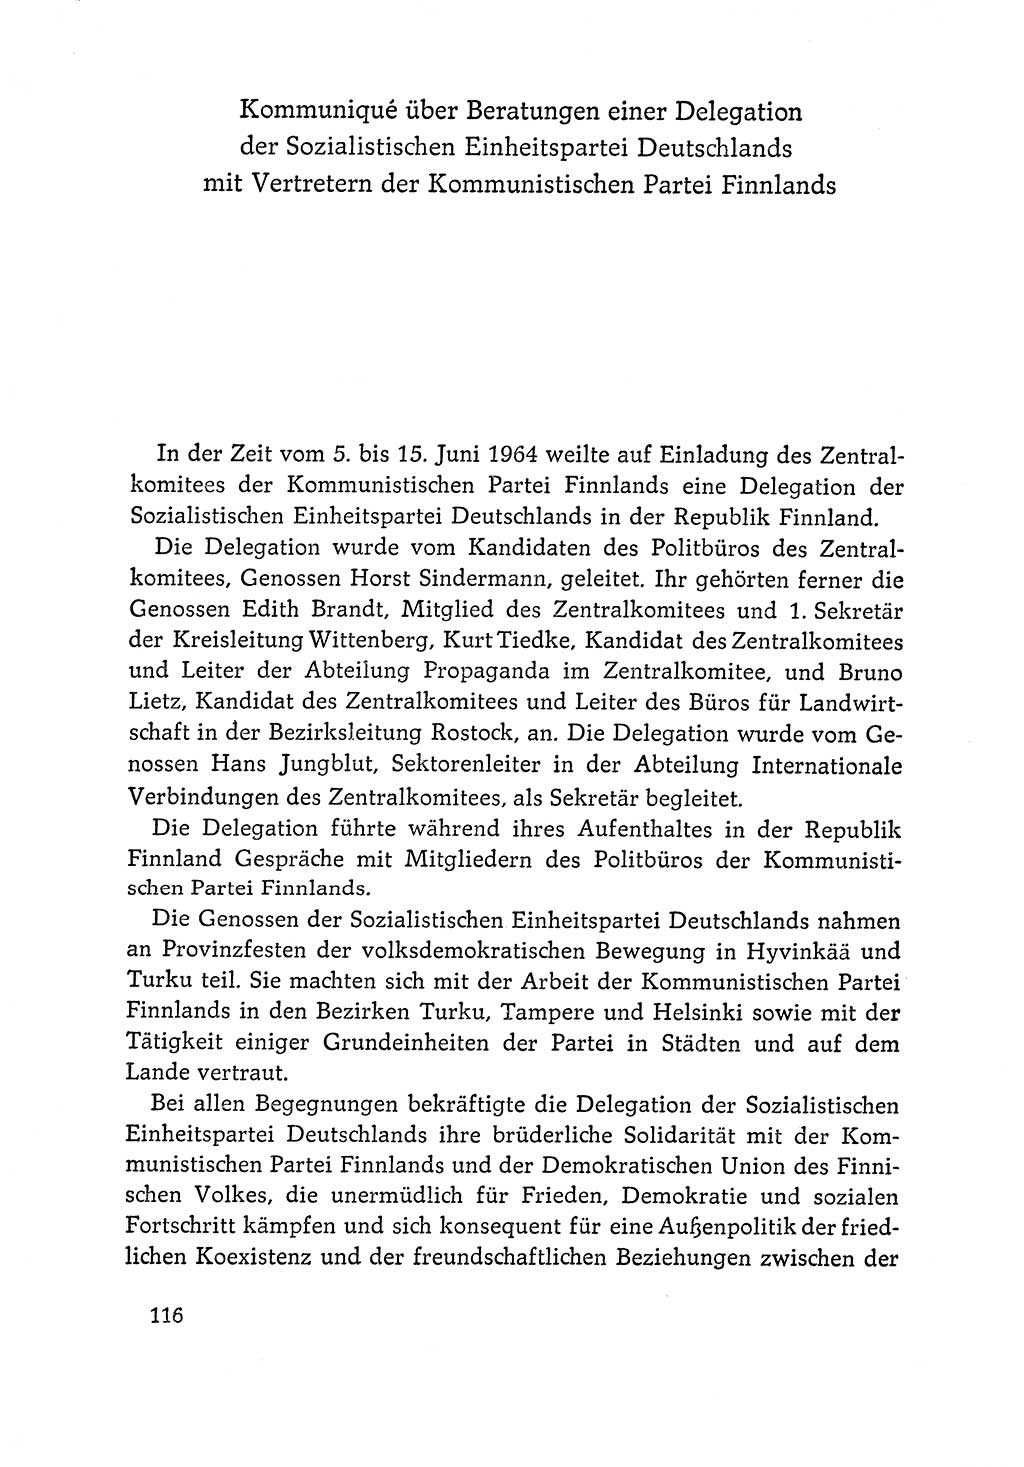 Dokumente der Sozialistischen Einheitspartei Deutschlands (SED) [Deutsche Demokratische Republik (DDR)] 1964-1965, Seite 116 (Dok. SED DDR 1964-1965, S. 116)